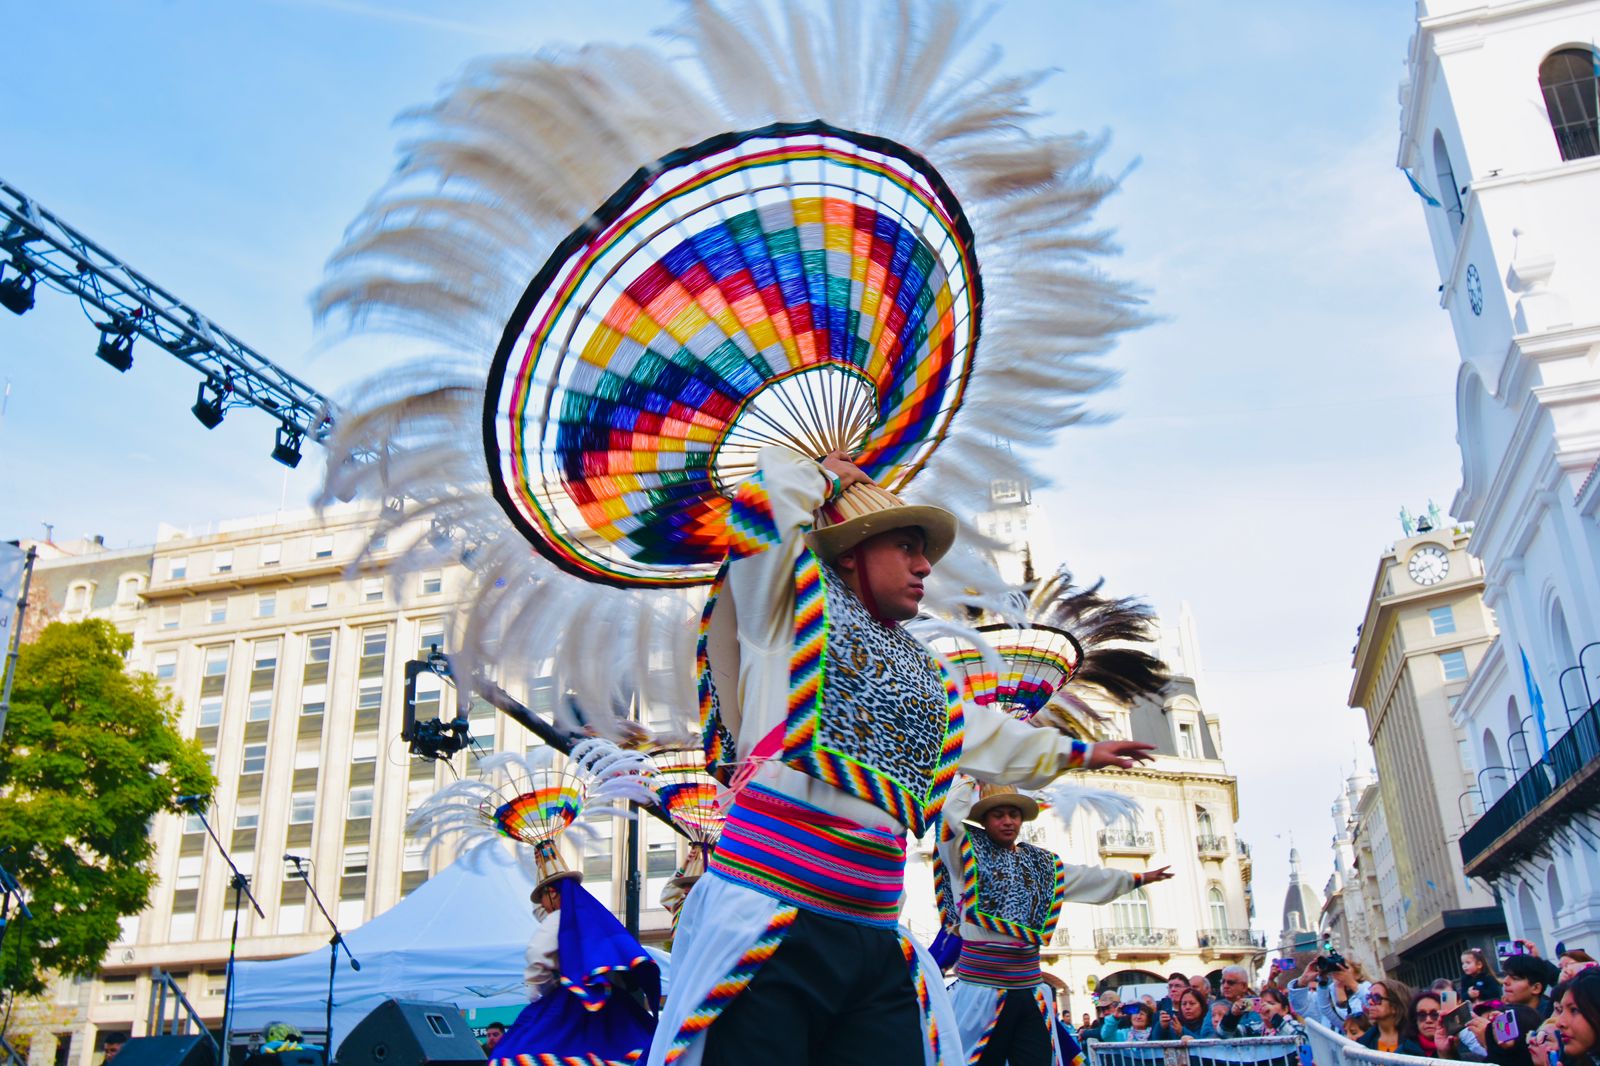 BA Celebra Bolivia tuvo un colorido encuentro de tradiciones y cultura en la Ciudad